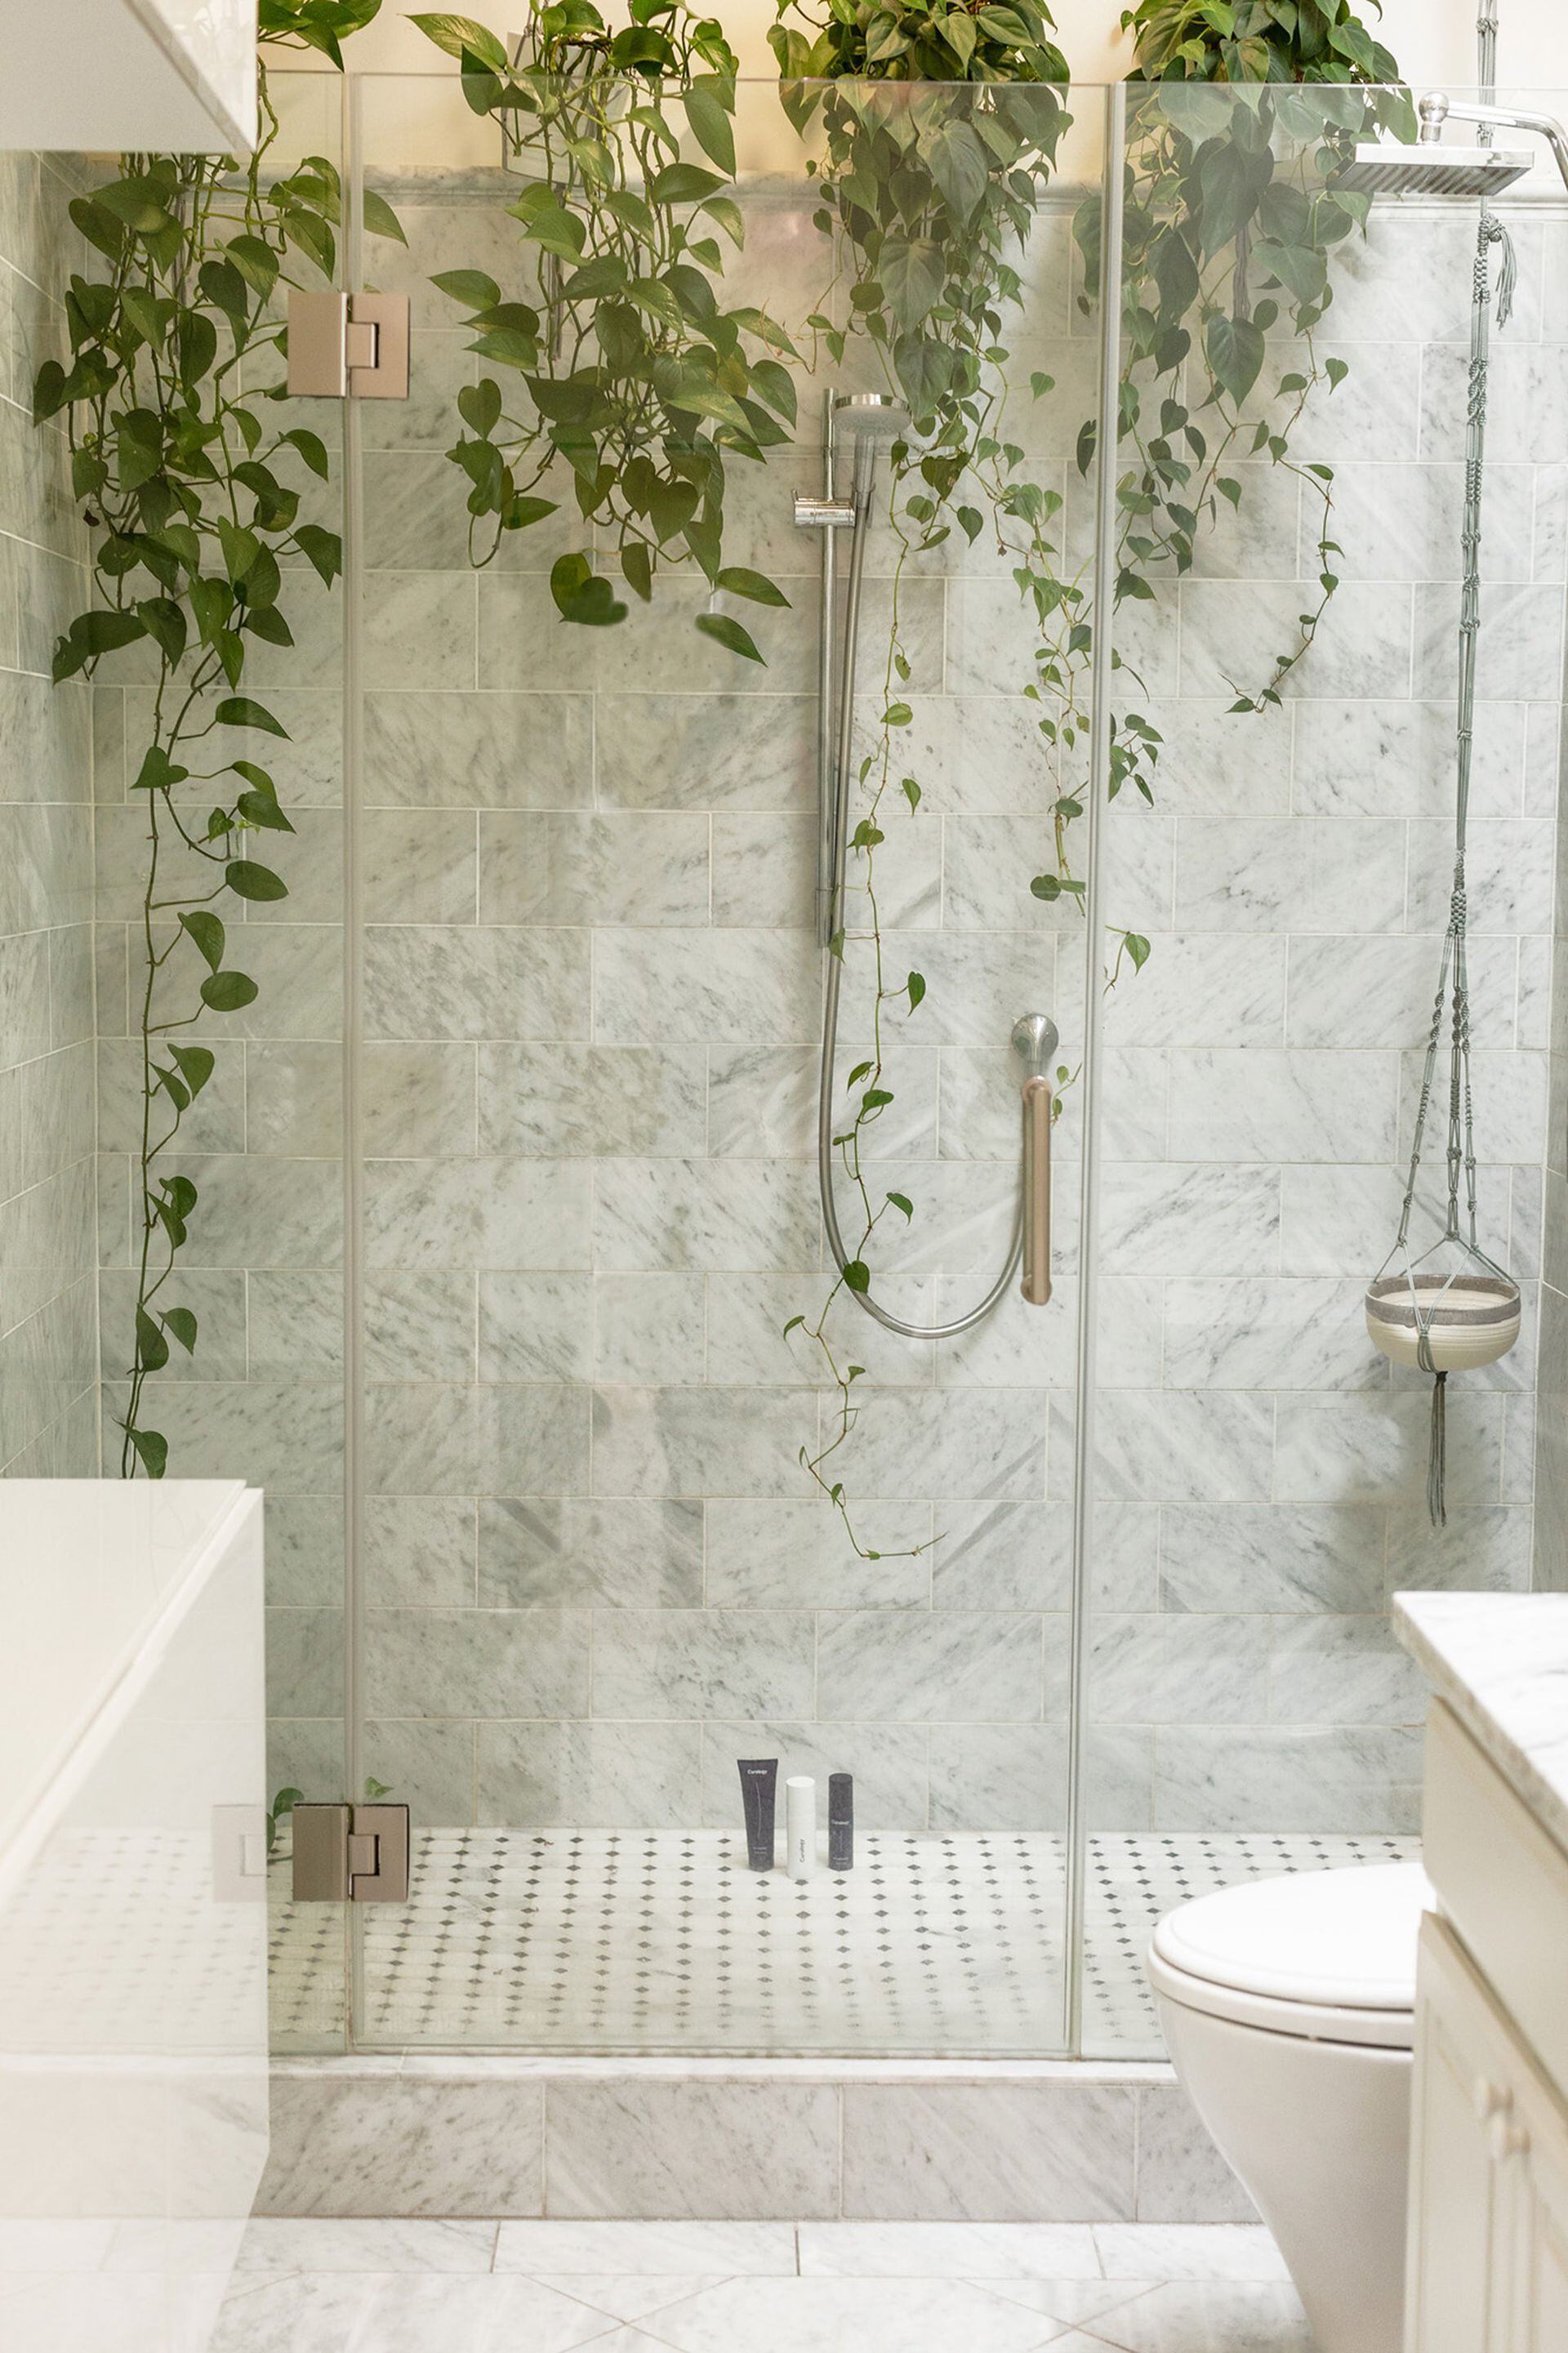 Una "catarata" de potus de distintas alturas dentro del cuarto de ducha